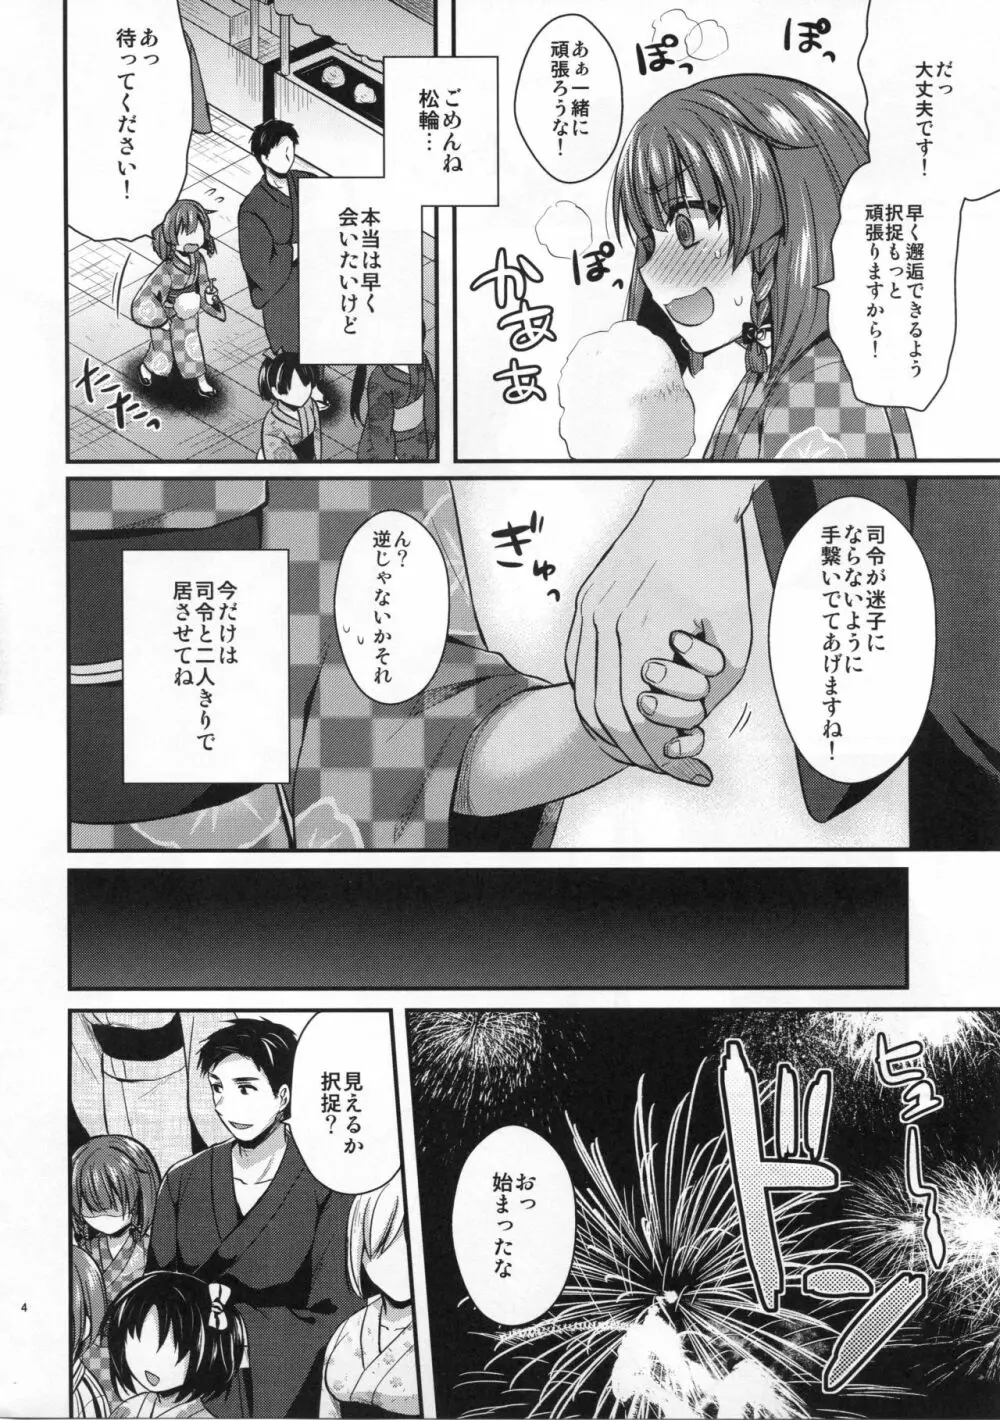 択捉ちゃんと浴衣デート - page3